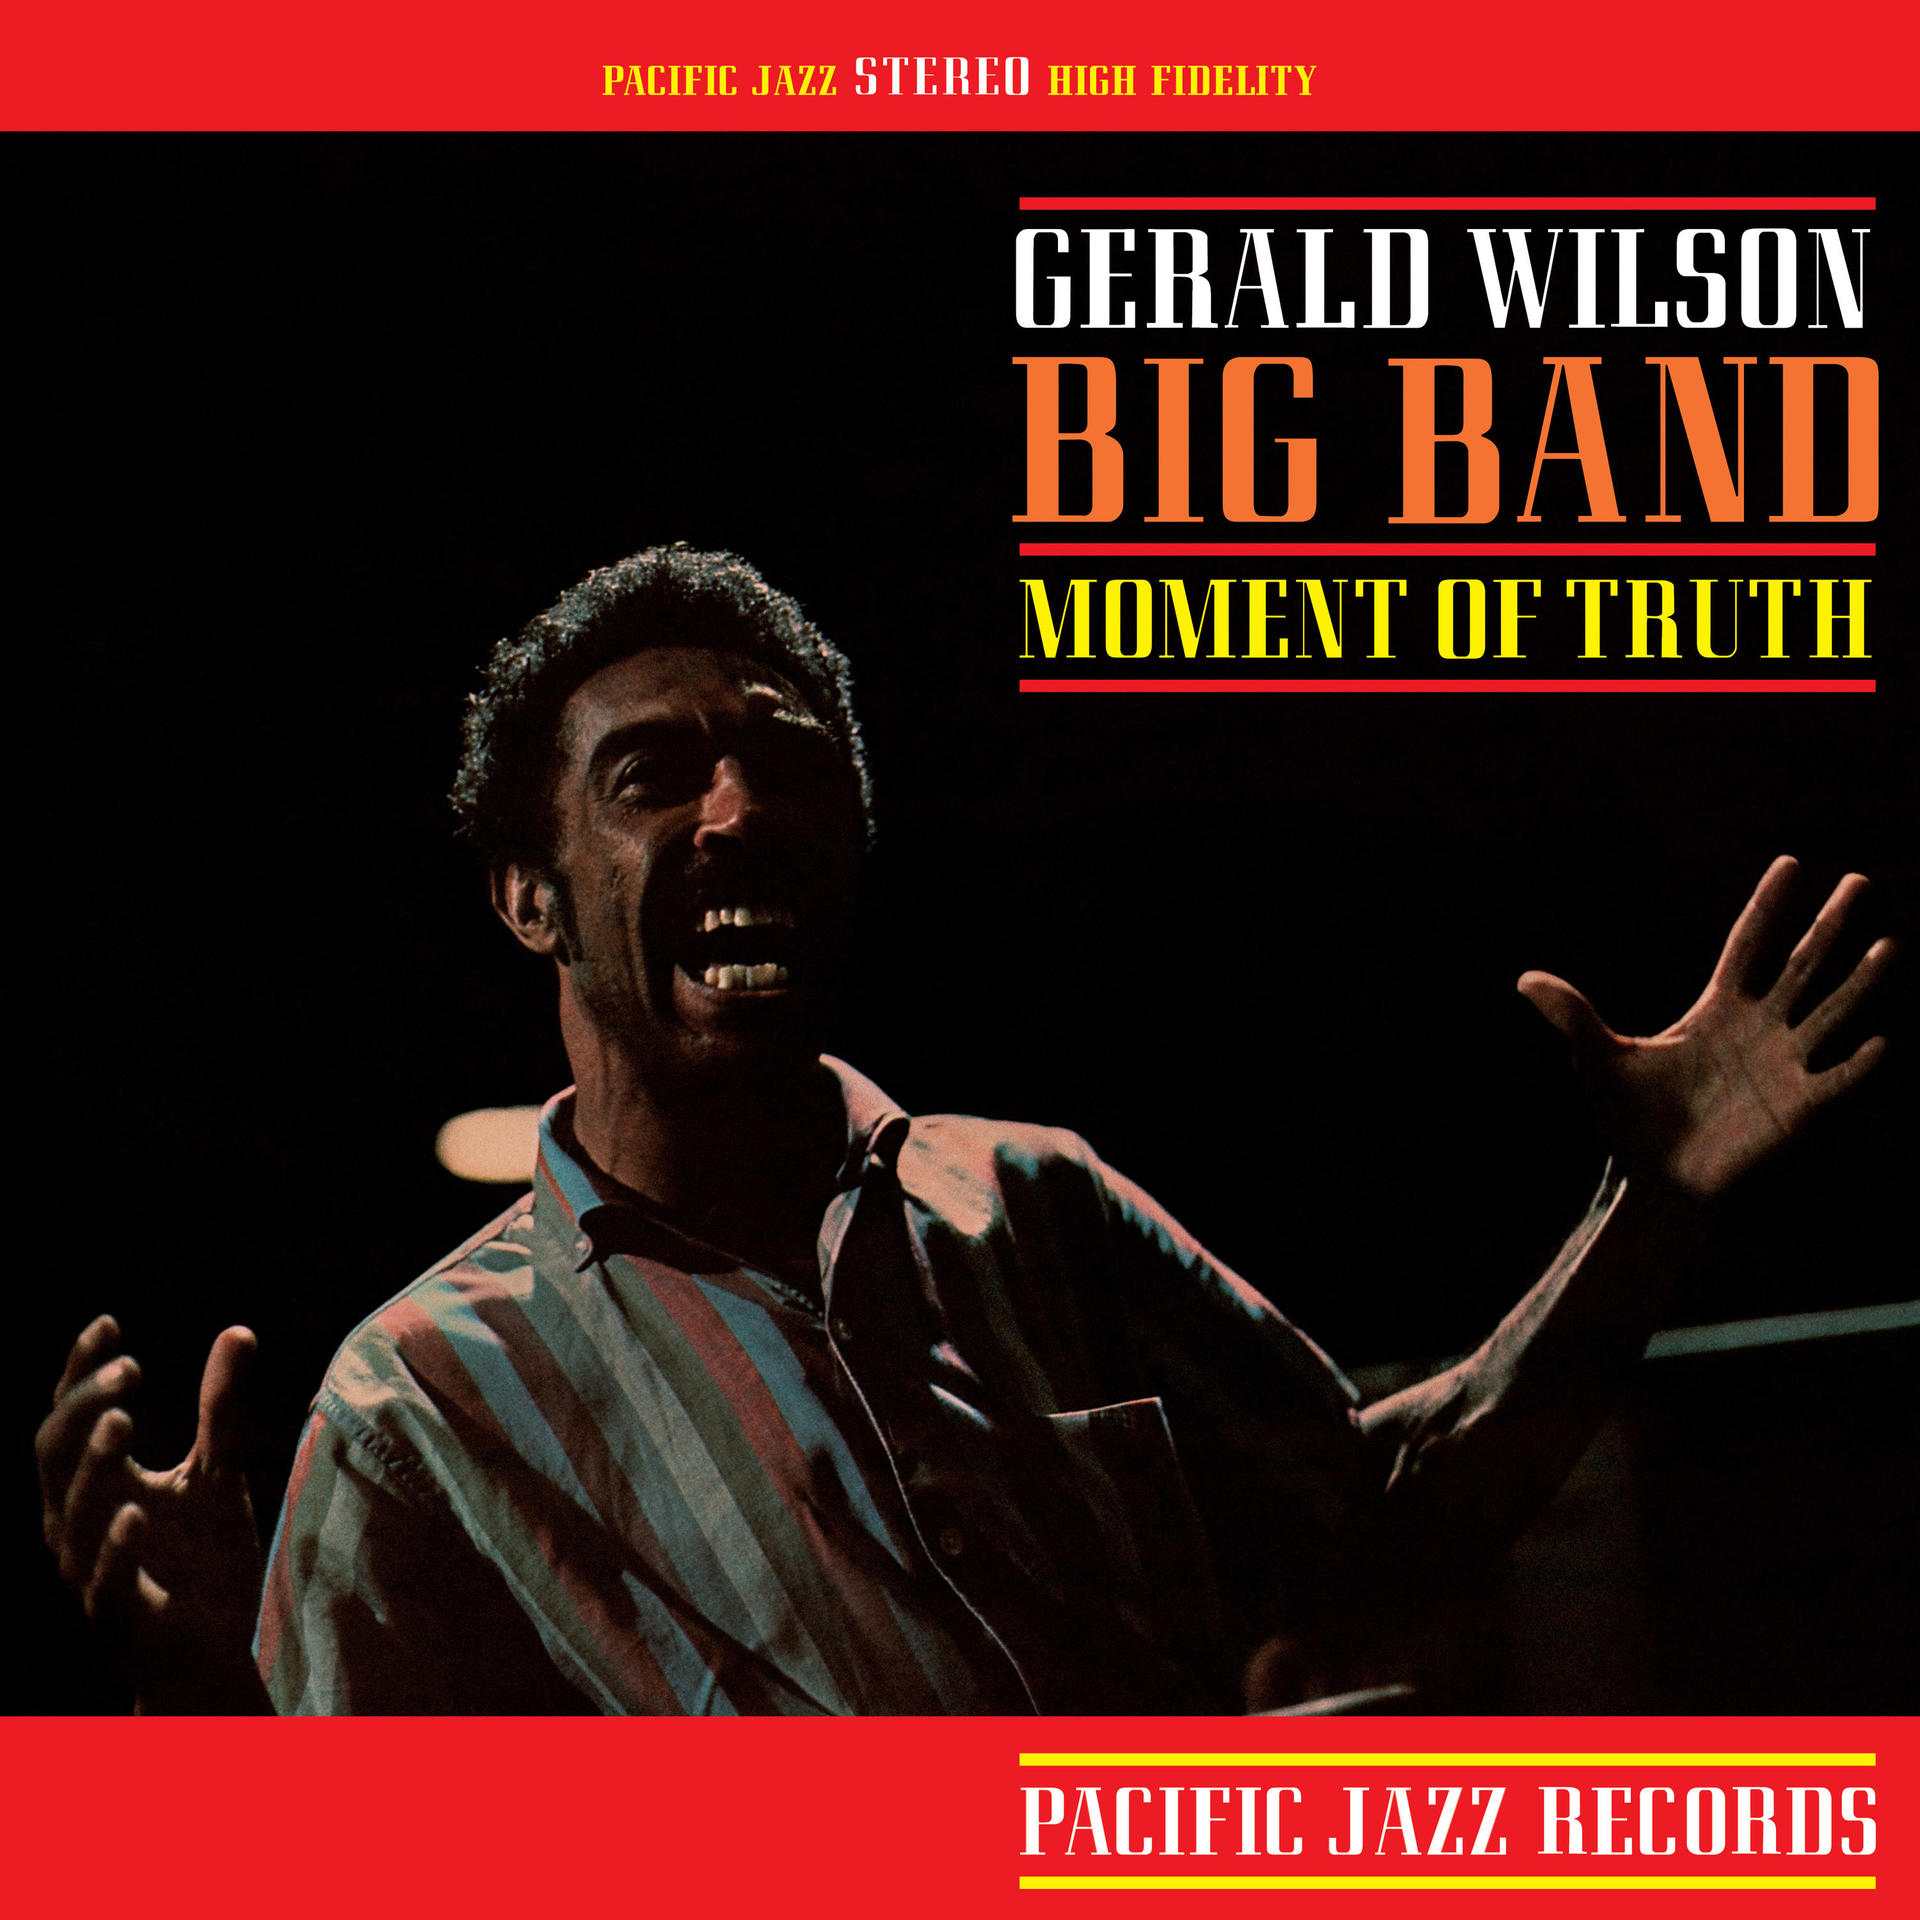 Gerald Wilson - Of (Vinyl) (Tone Vinyl) Truth Moment - Poet